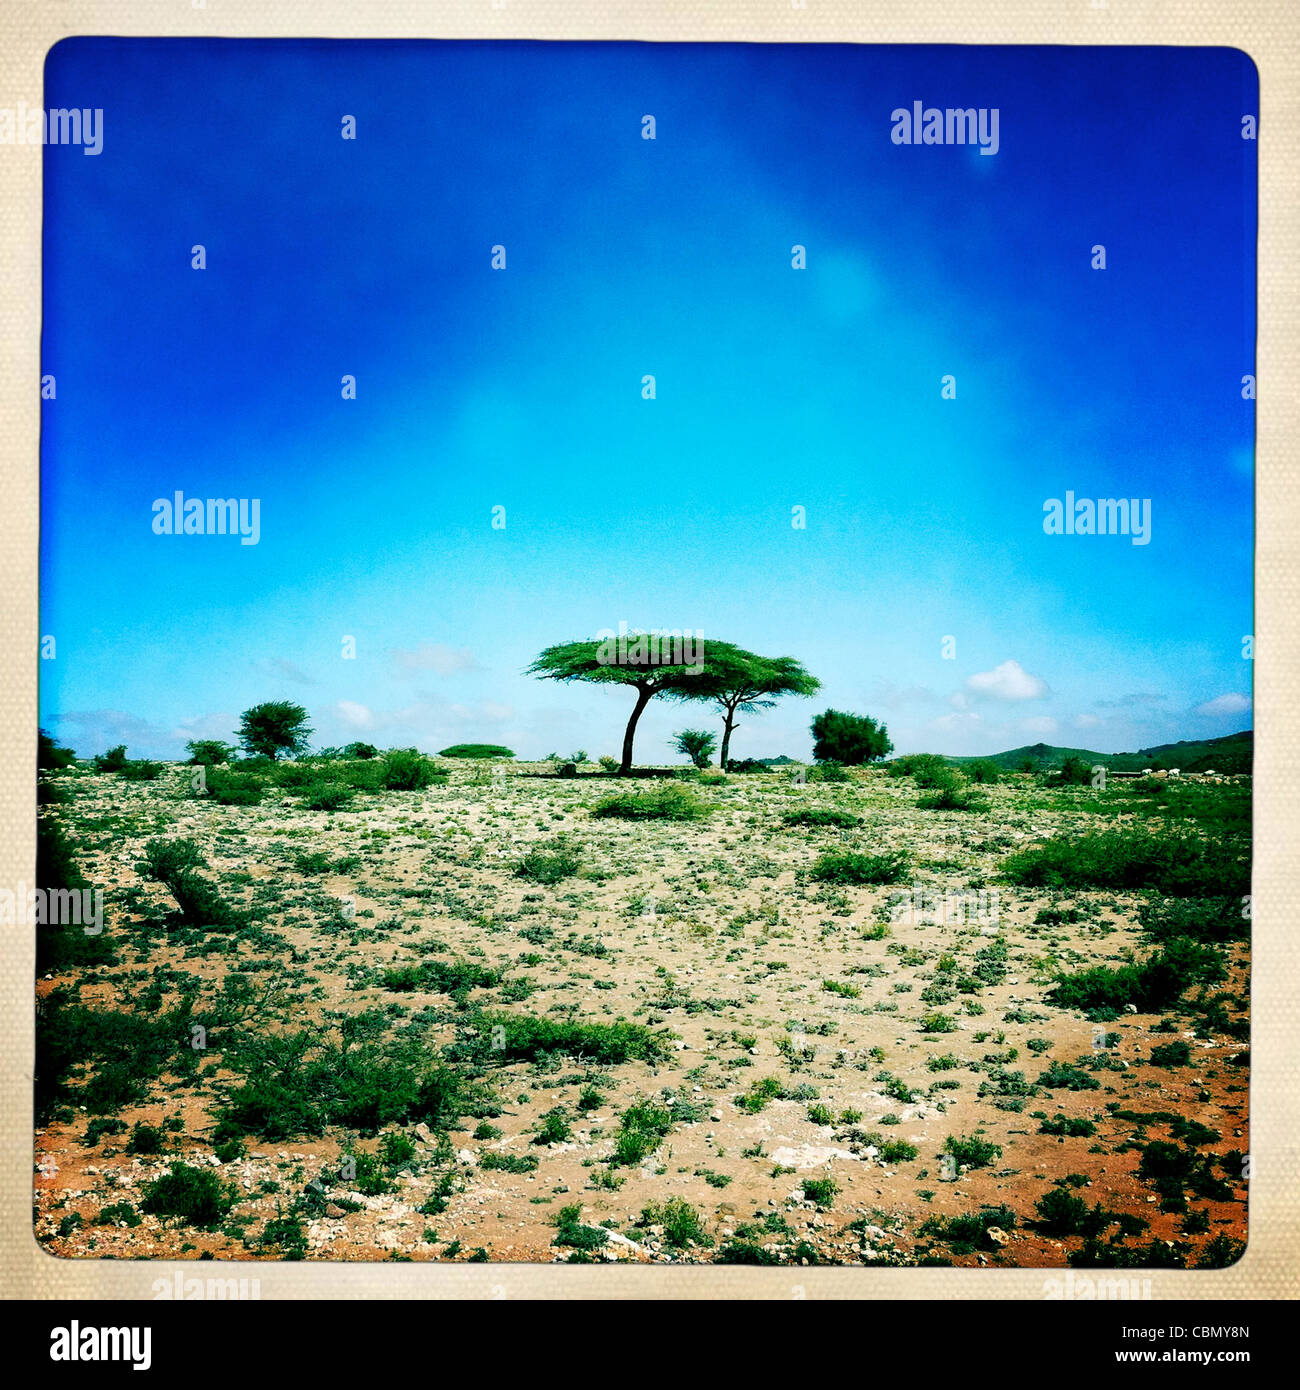 Solitario árbol en el paisaje árido El Sheikh Somalilandia Foto de stock